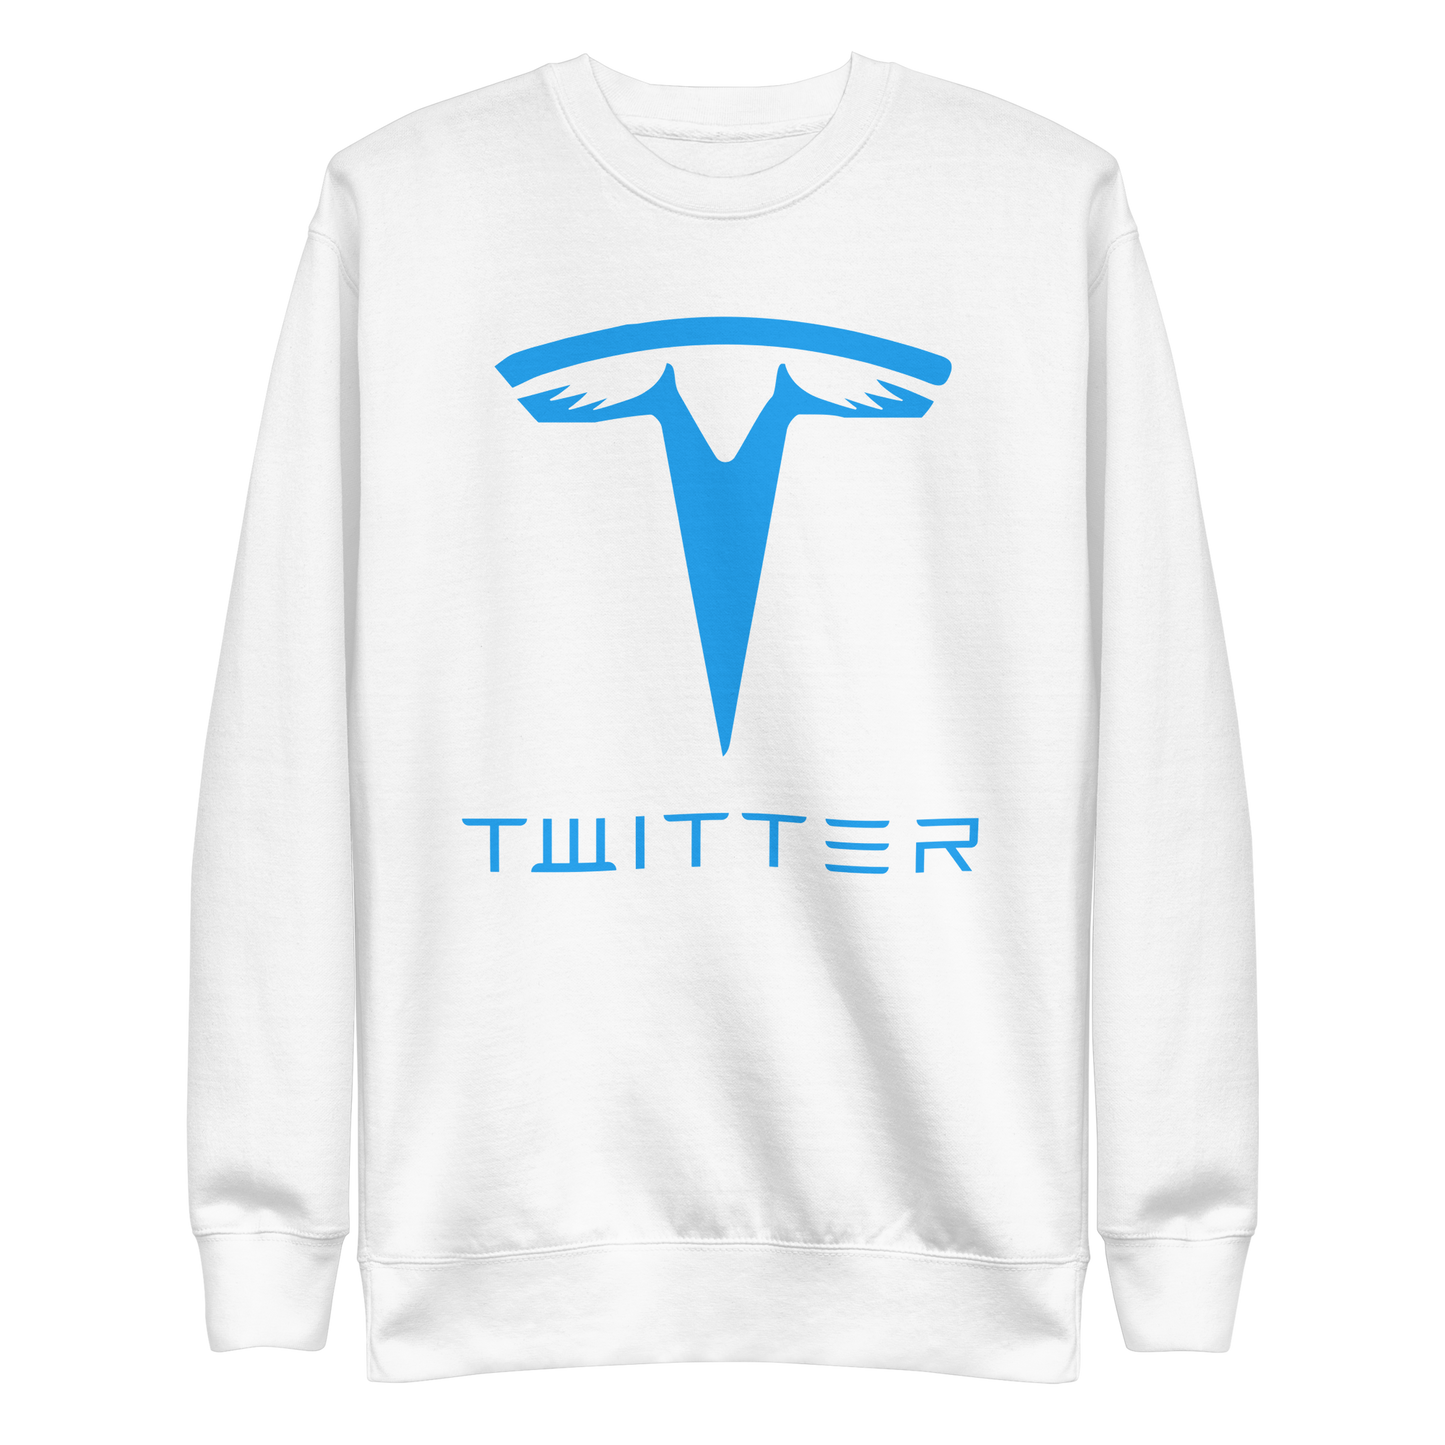 Twitter "T" Sweatshirt